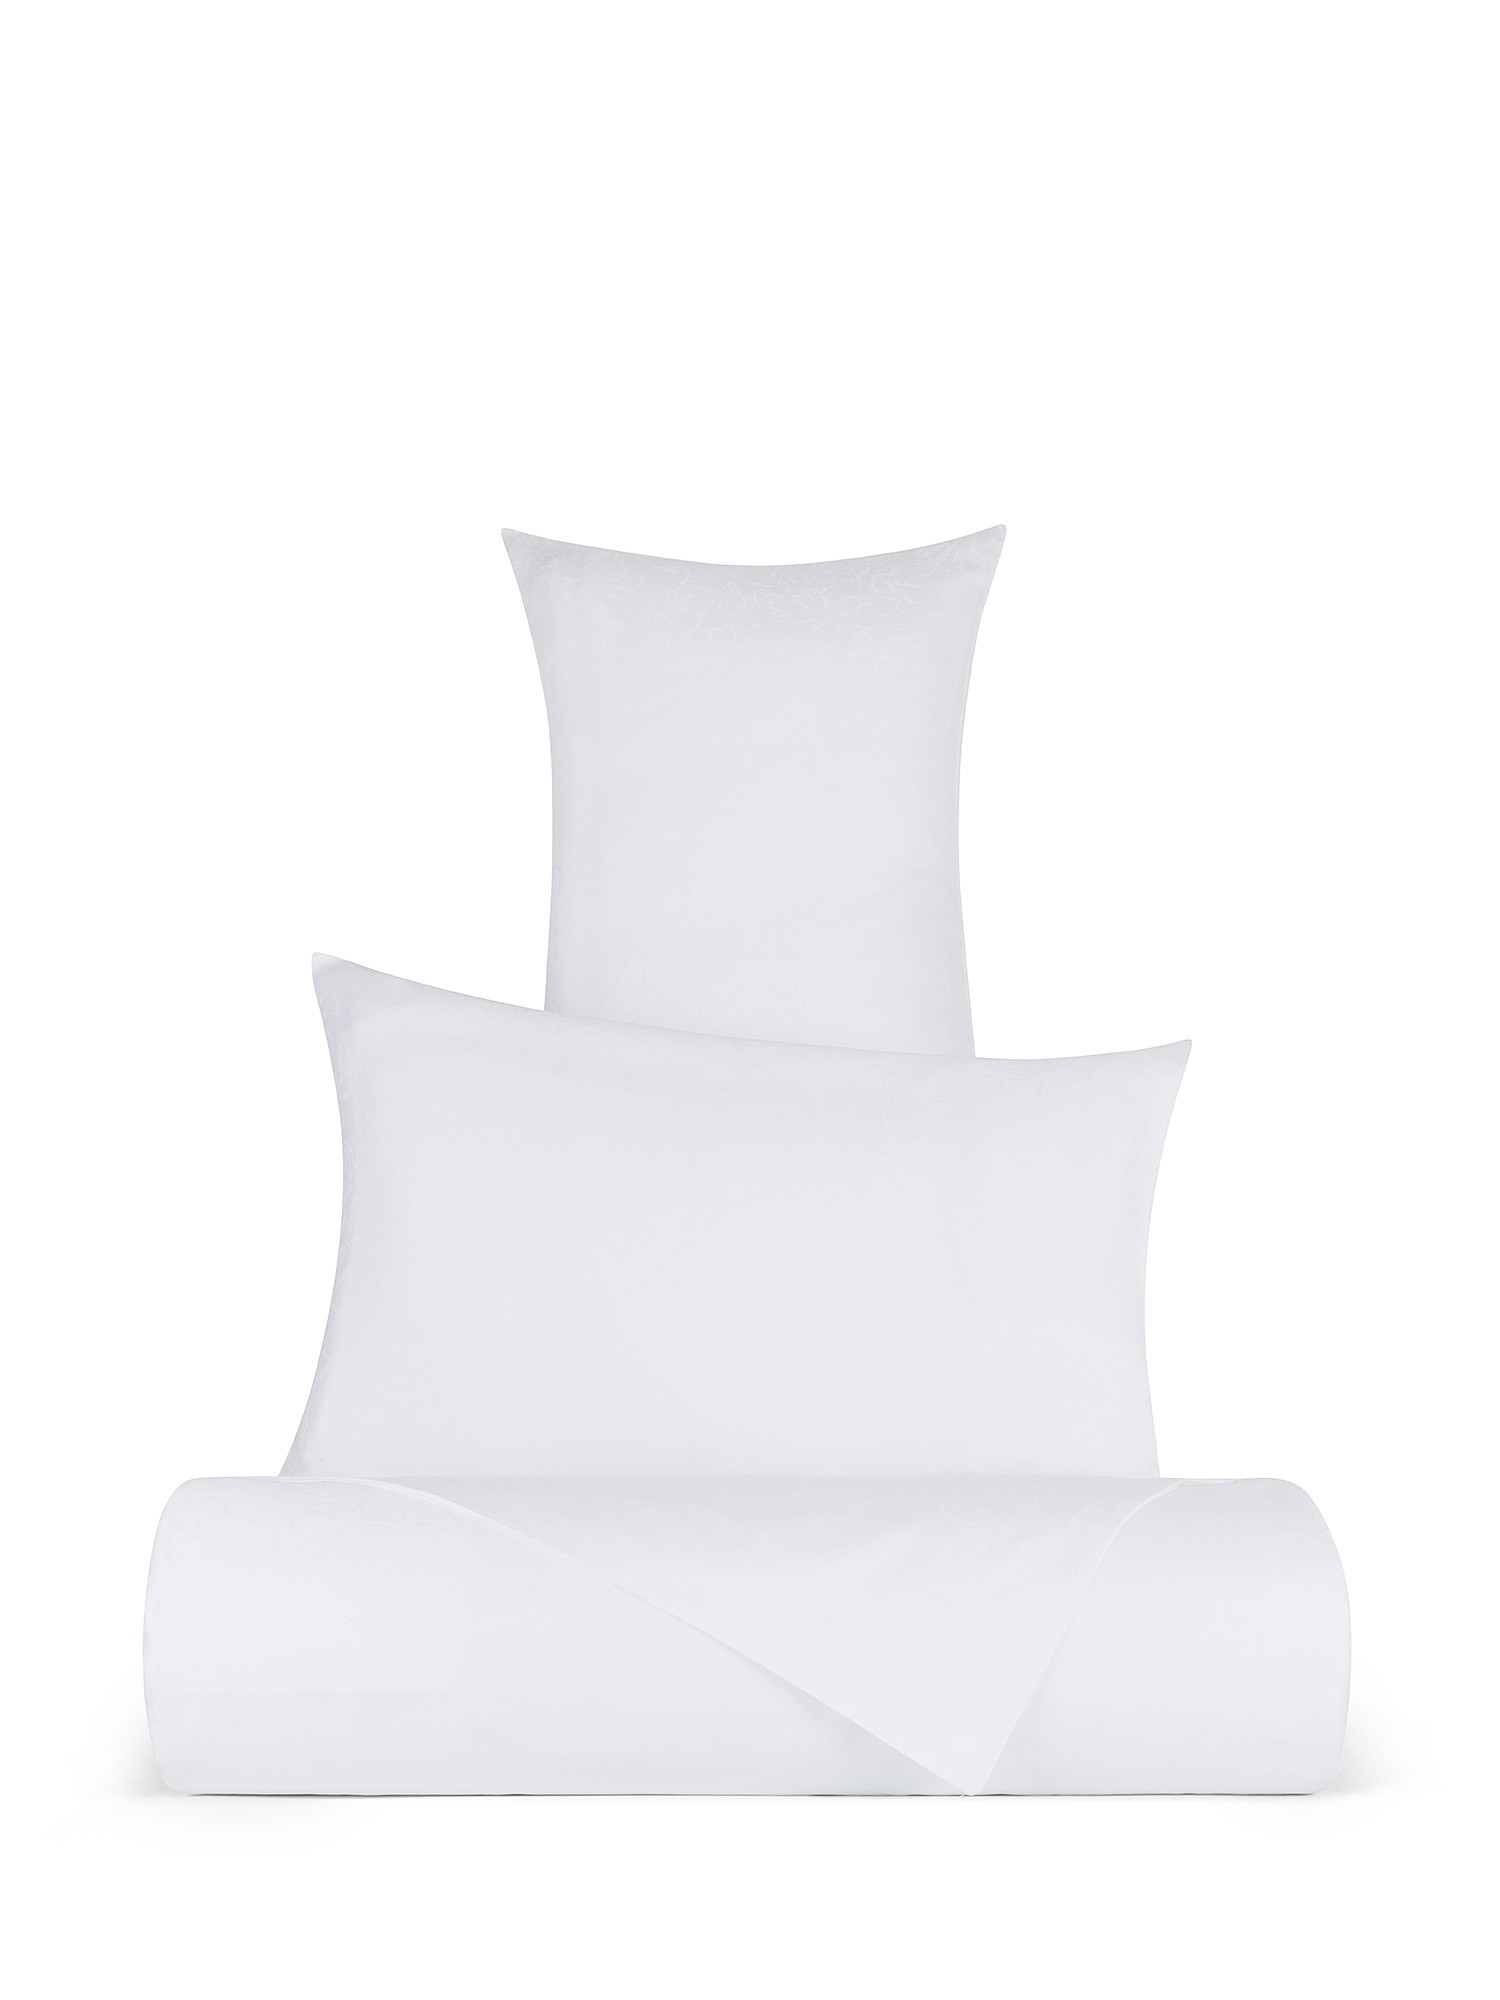 Lenzuolo liscio in pregiato cotone percalle Portofino, Bianco, large image number 0